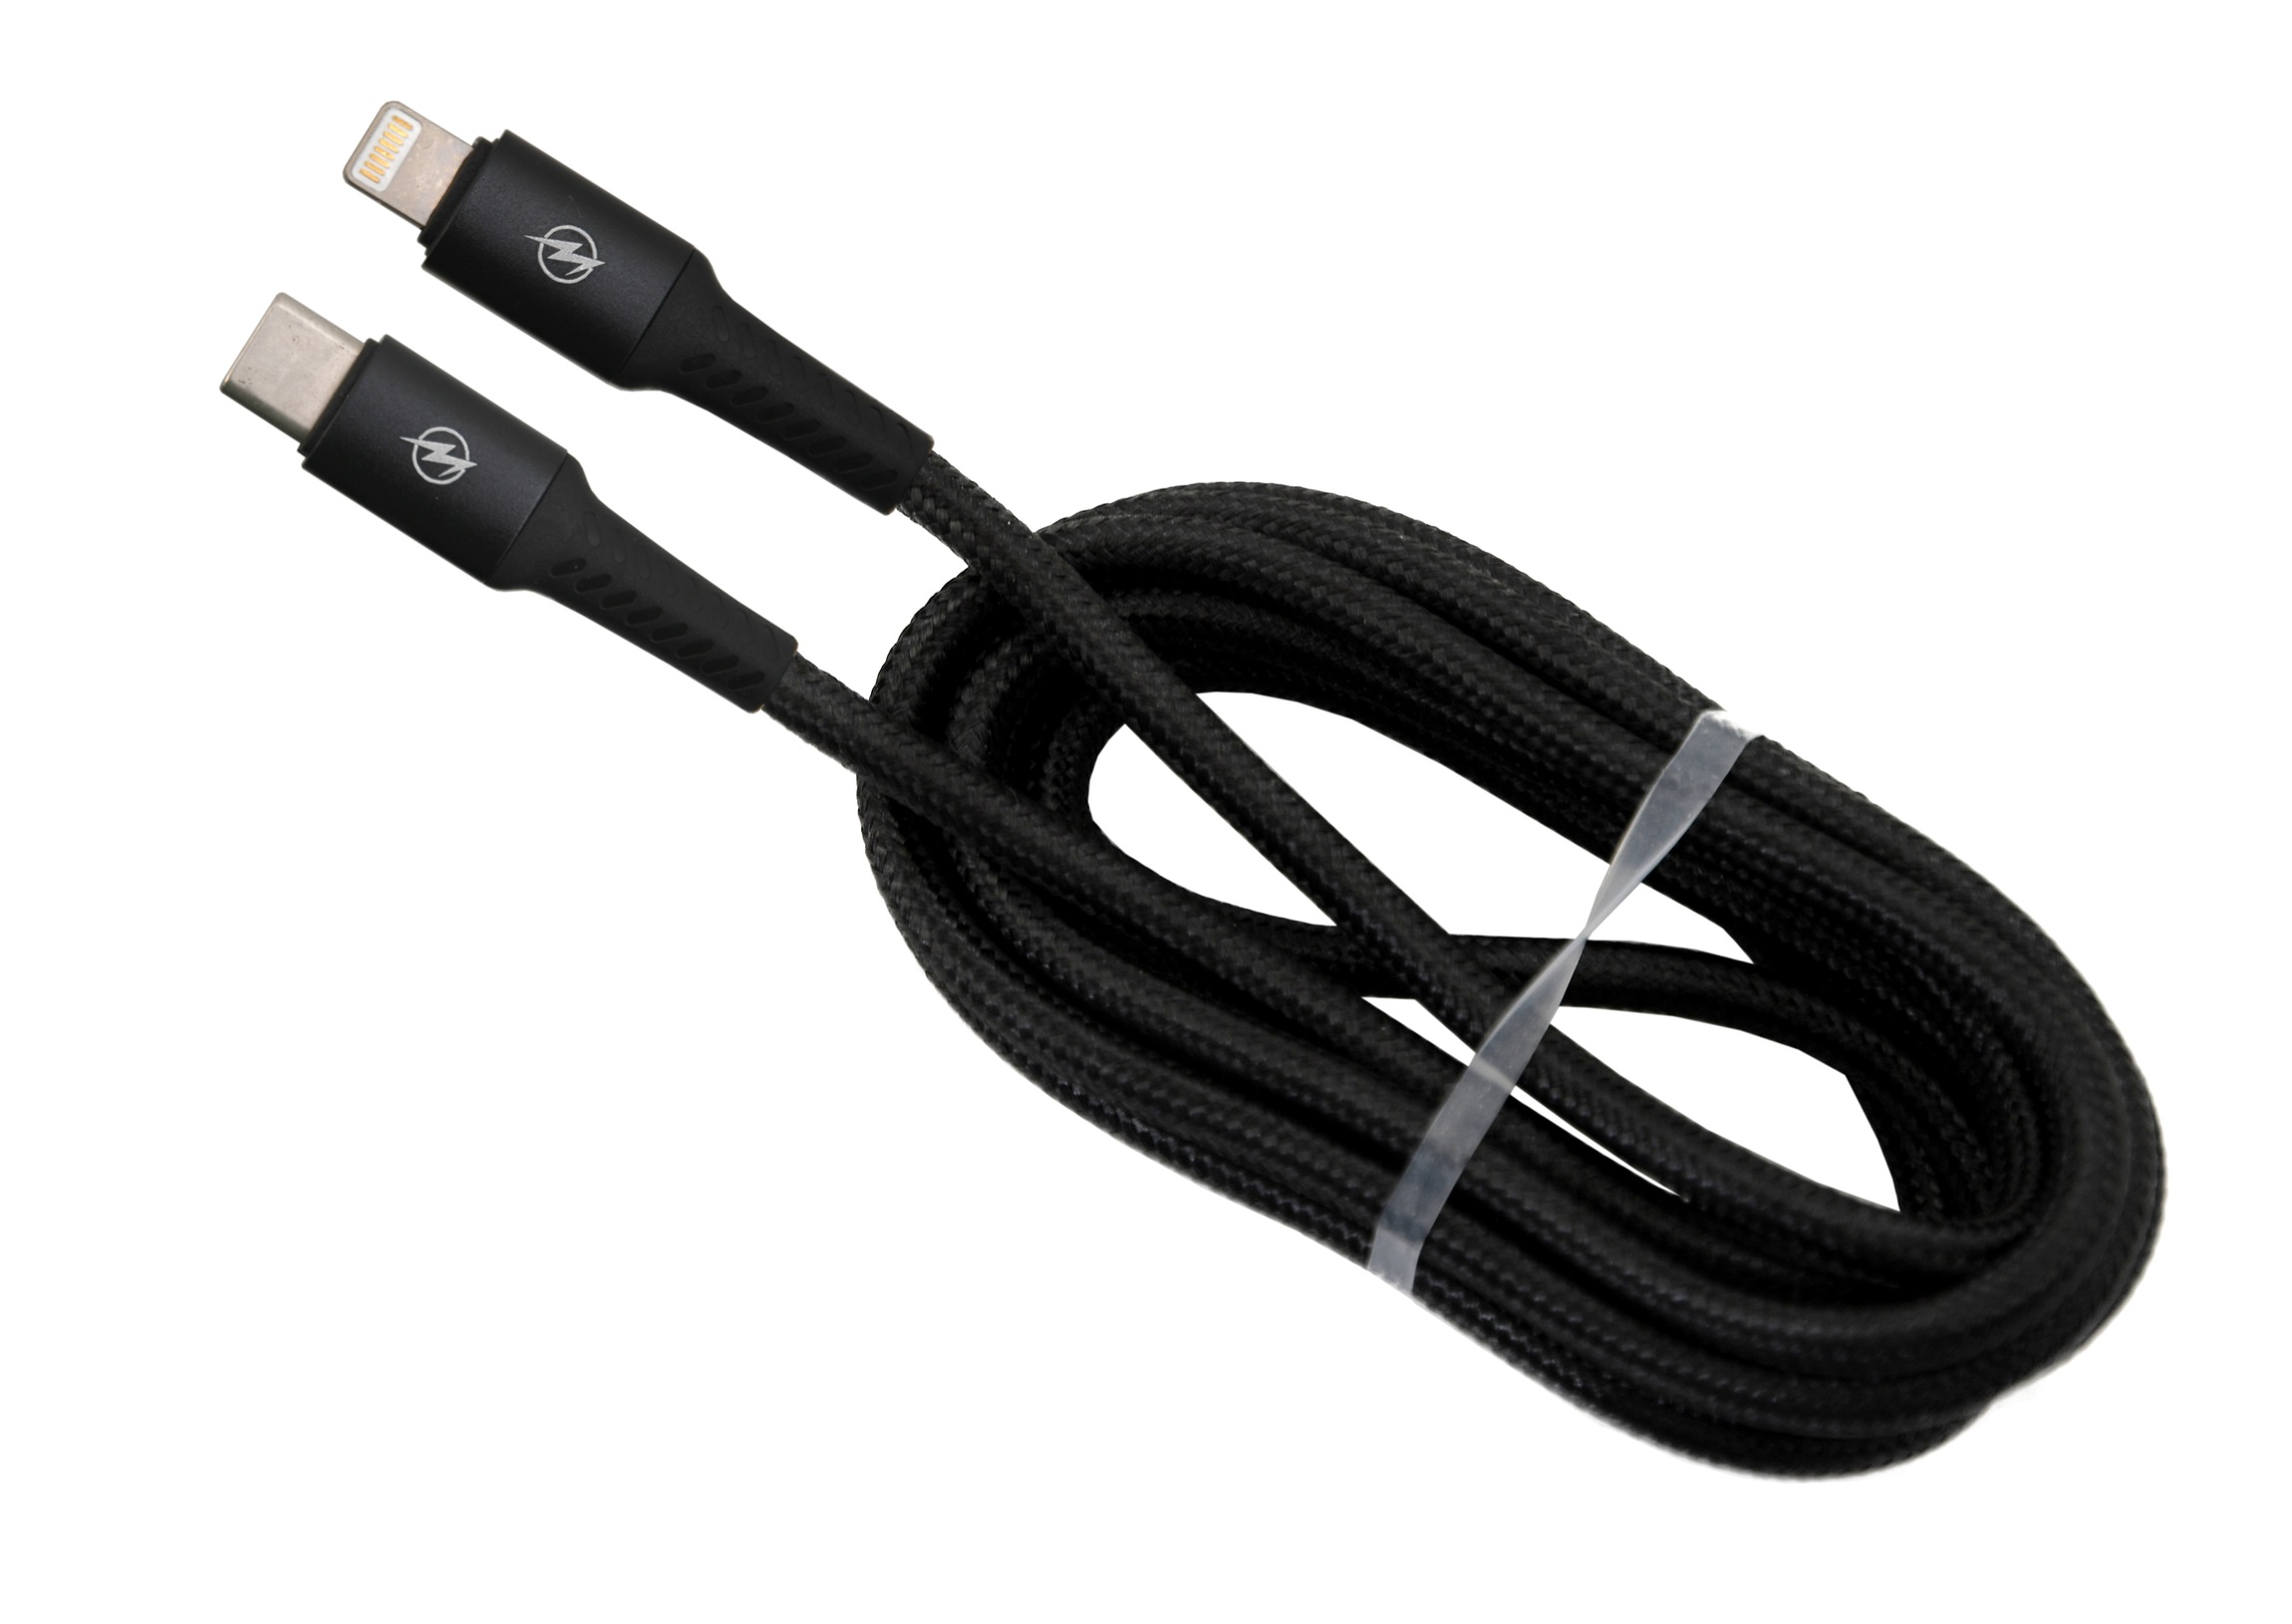 Datový a nabíjecí kabel SPEED USB-C / iPhone 480 Mb/s 1,5m